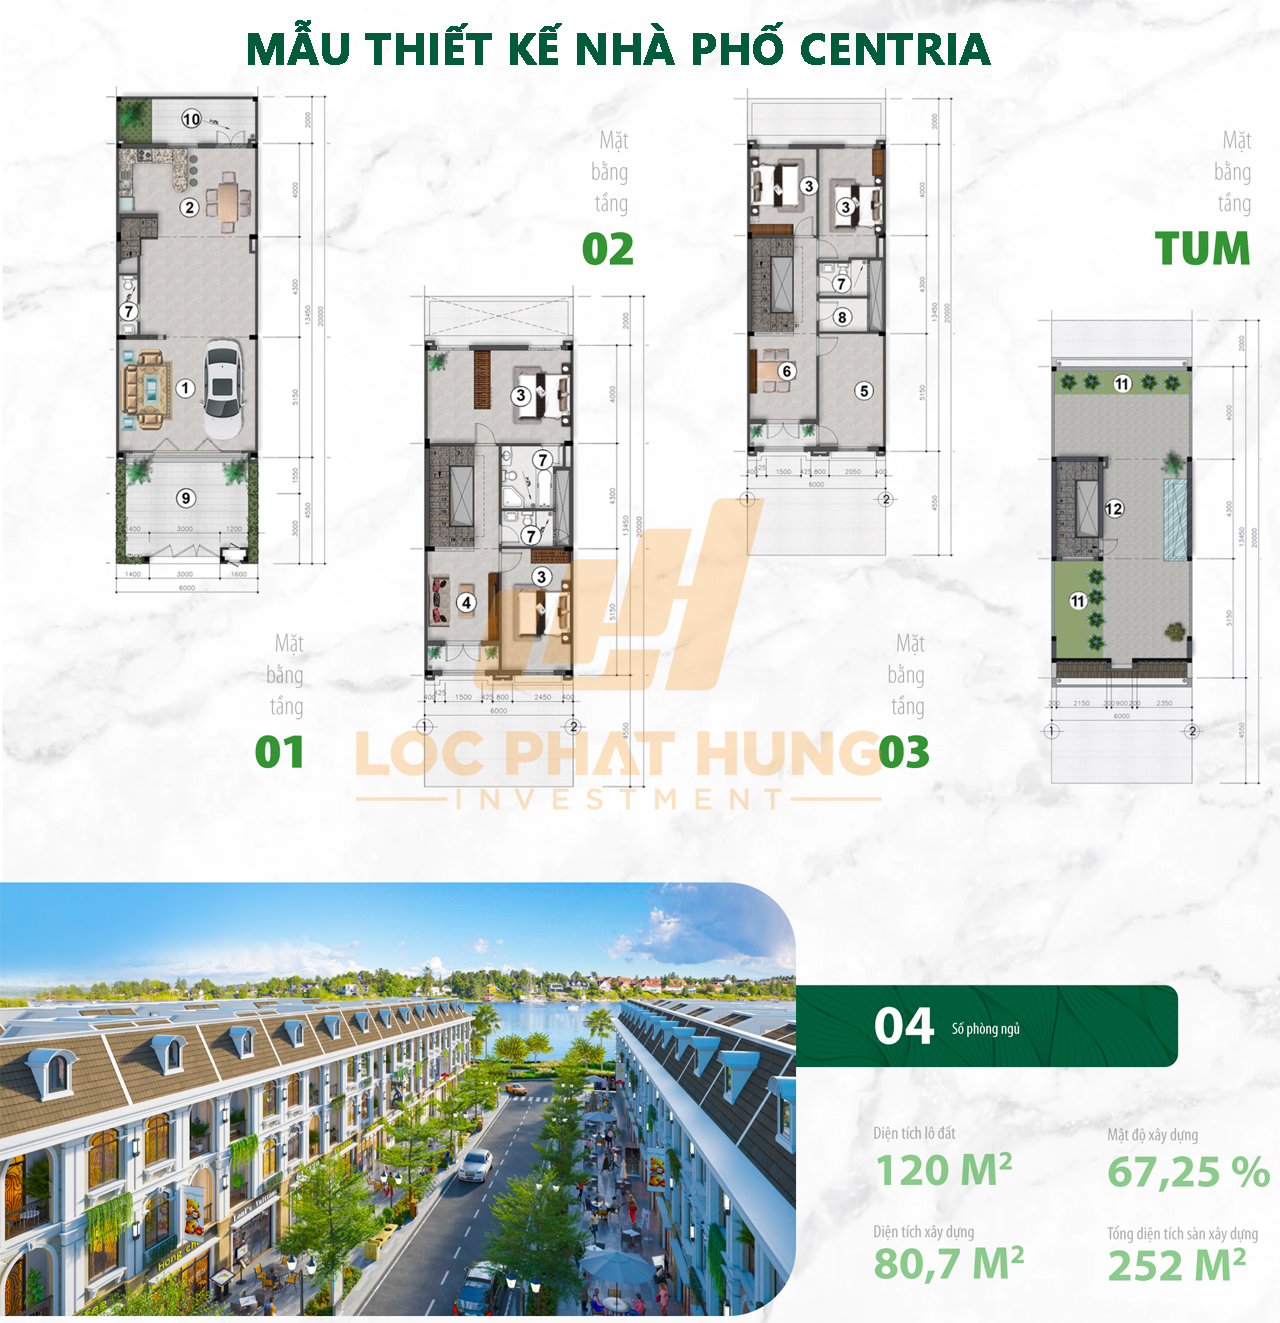 Mẫu thiết kế nhà phố & Nhà phố Thương mai Centria Island